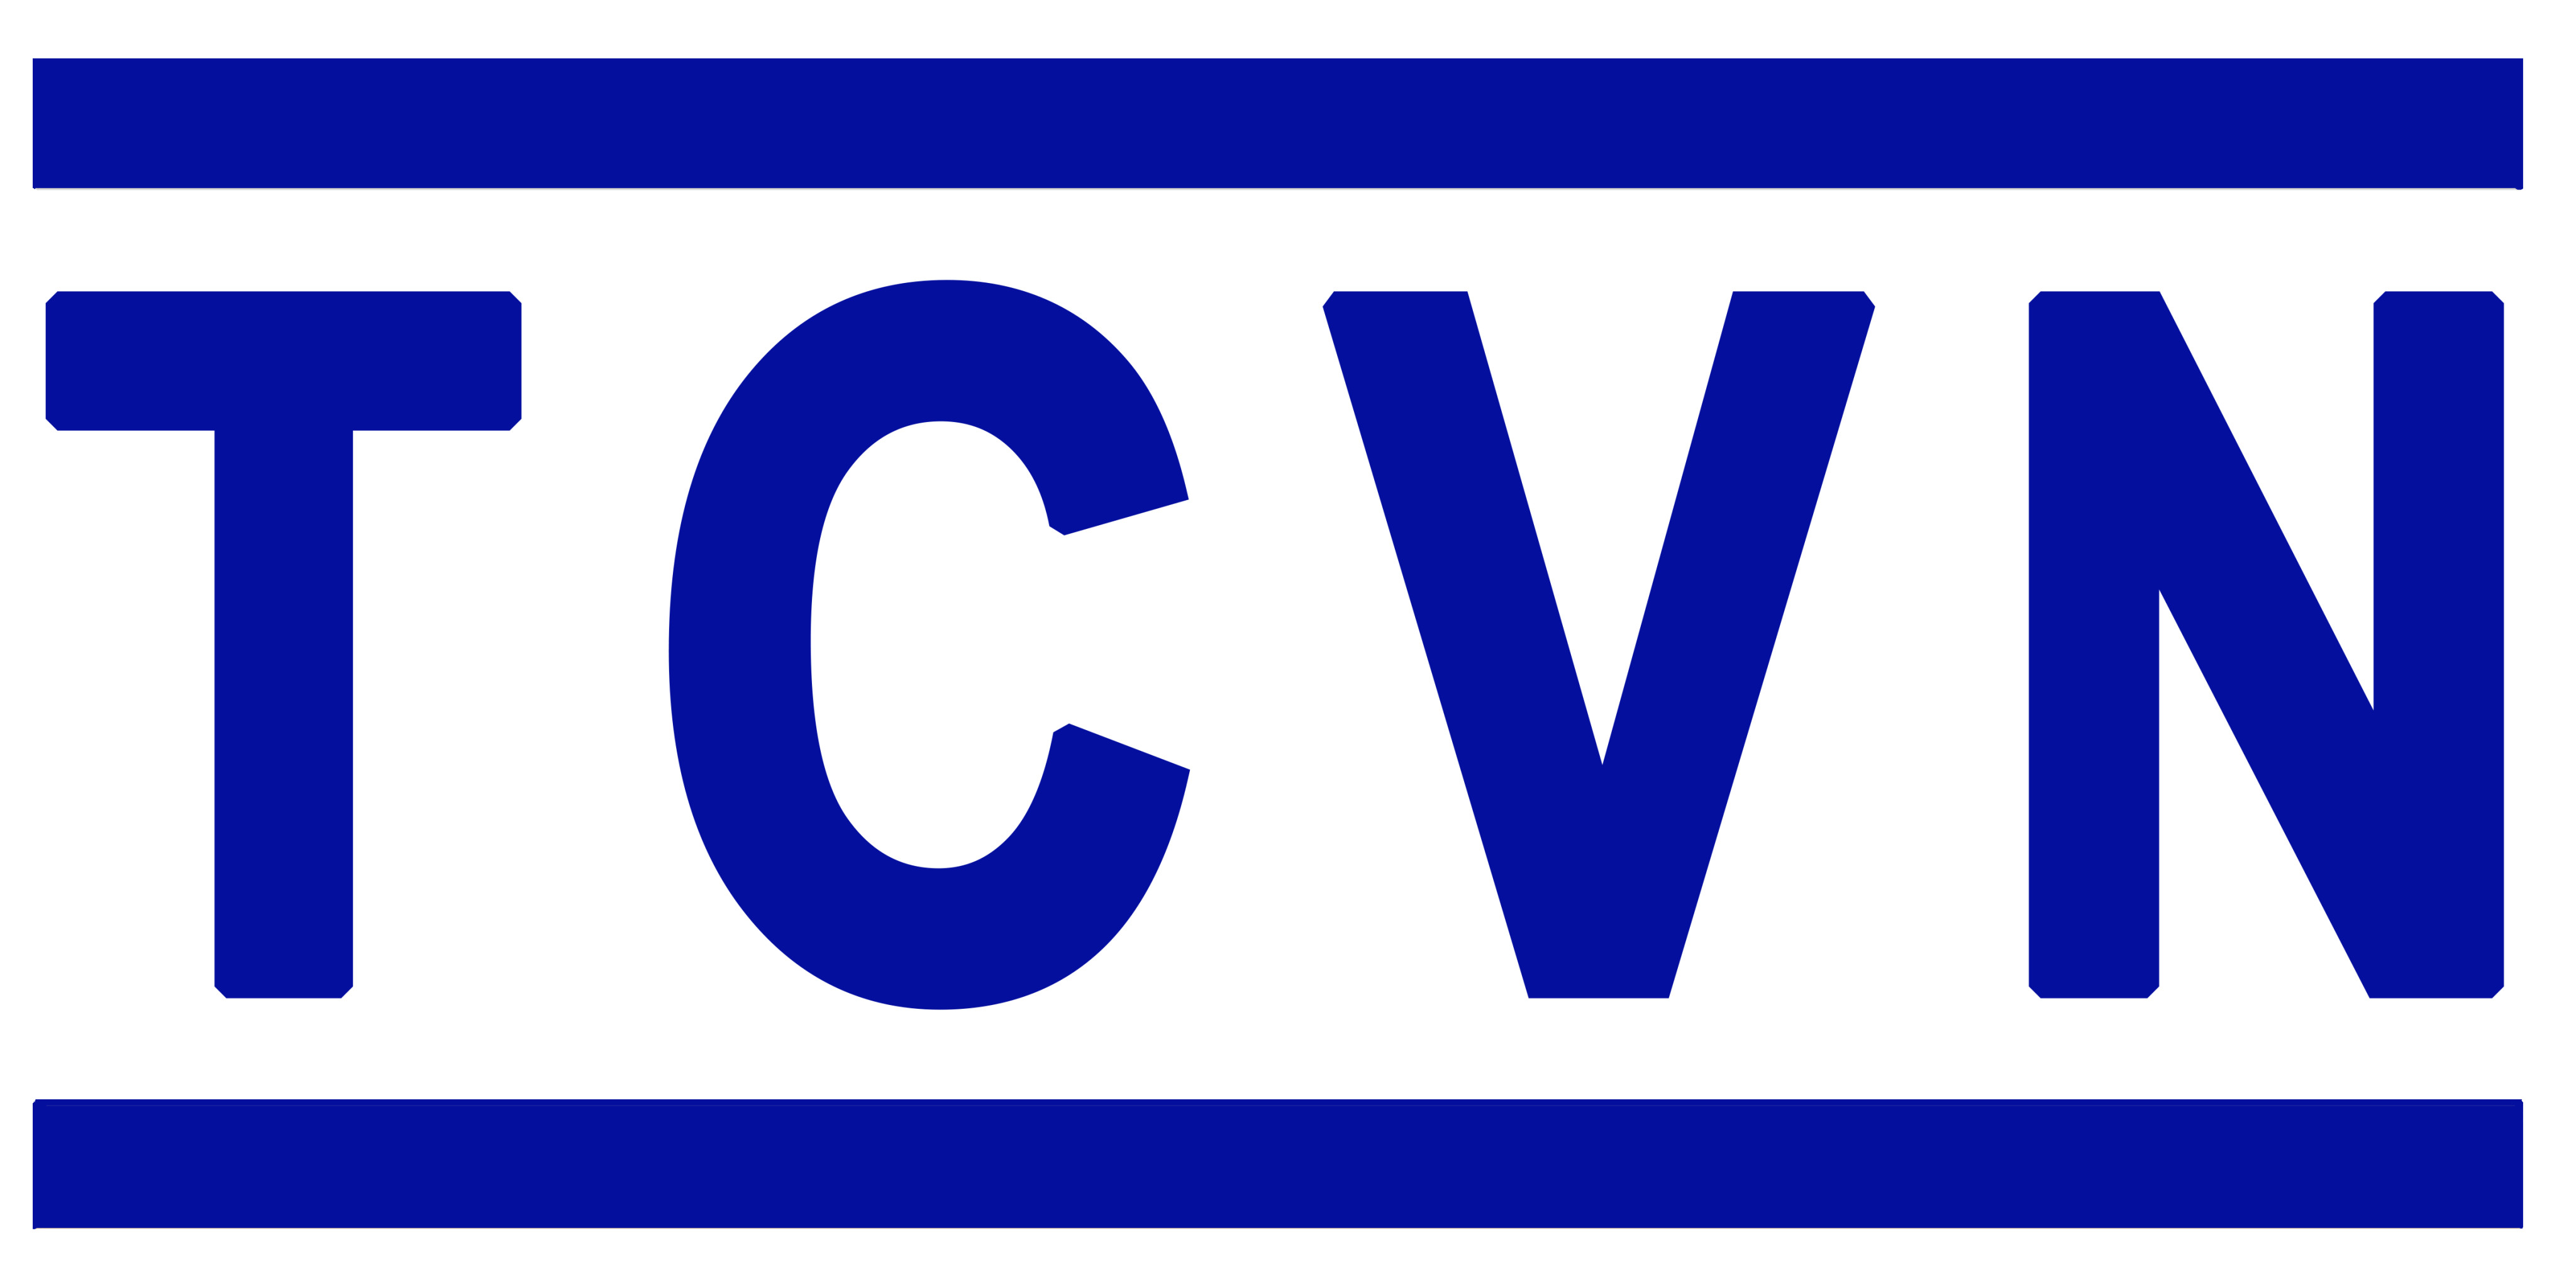 Danh mục tiêu chuẩn Quốc Gia (TCVN) công bố tháng 4 năm 2020